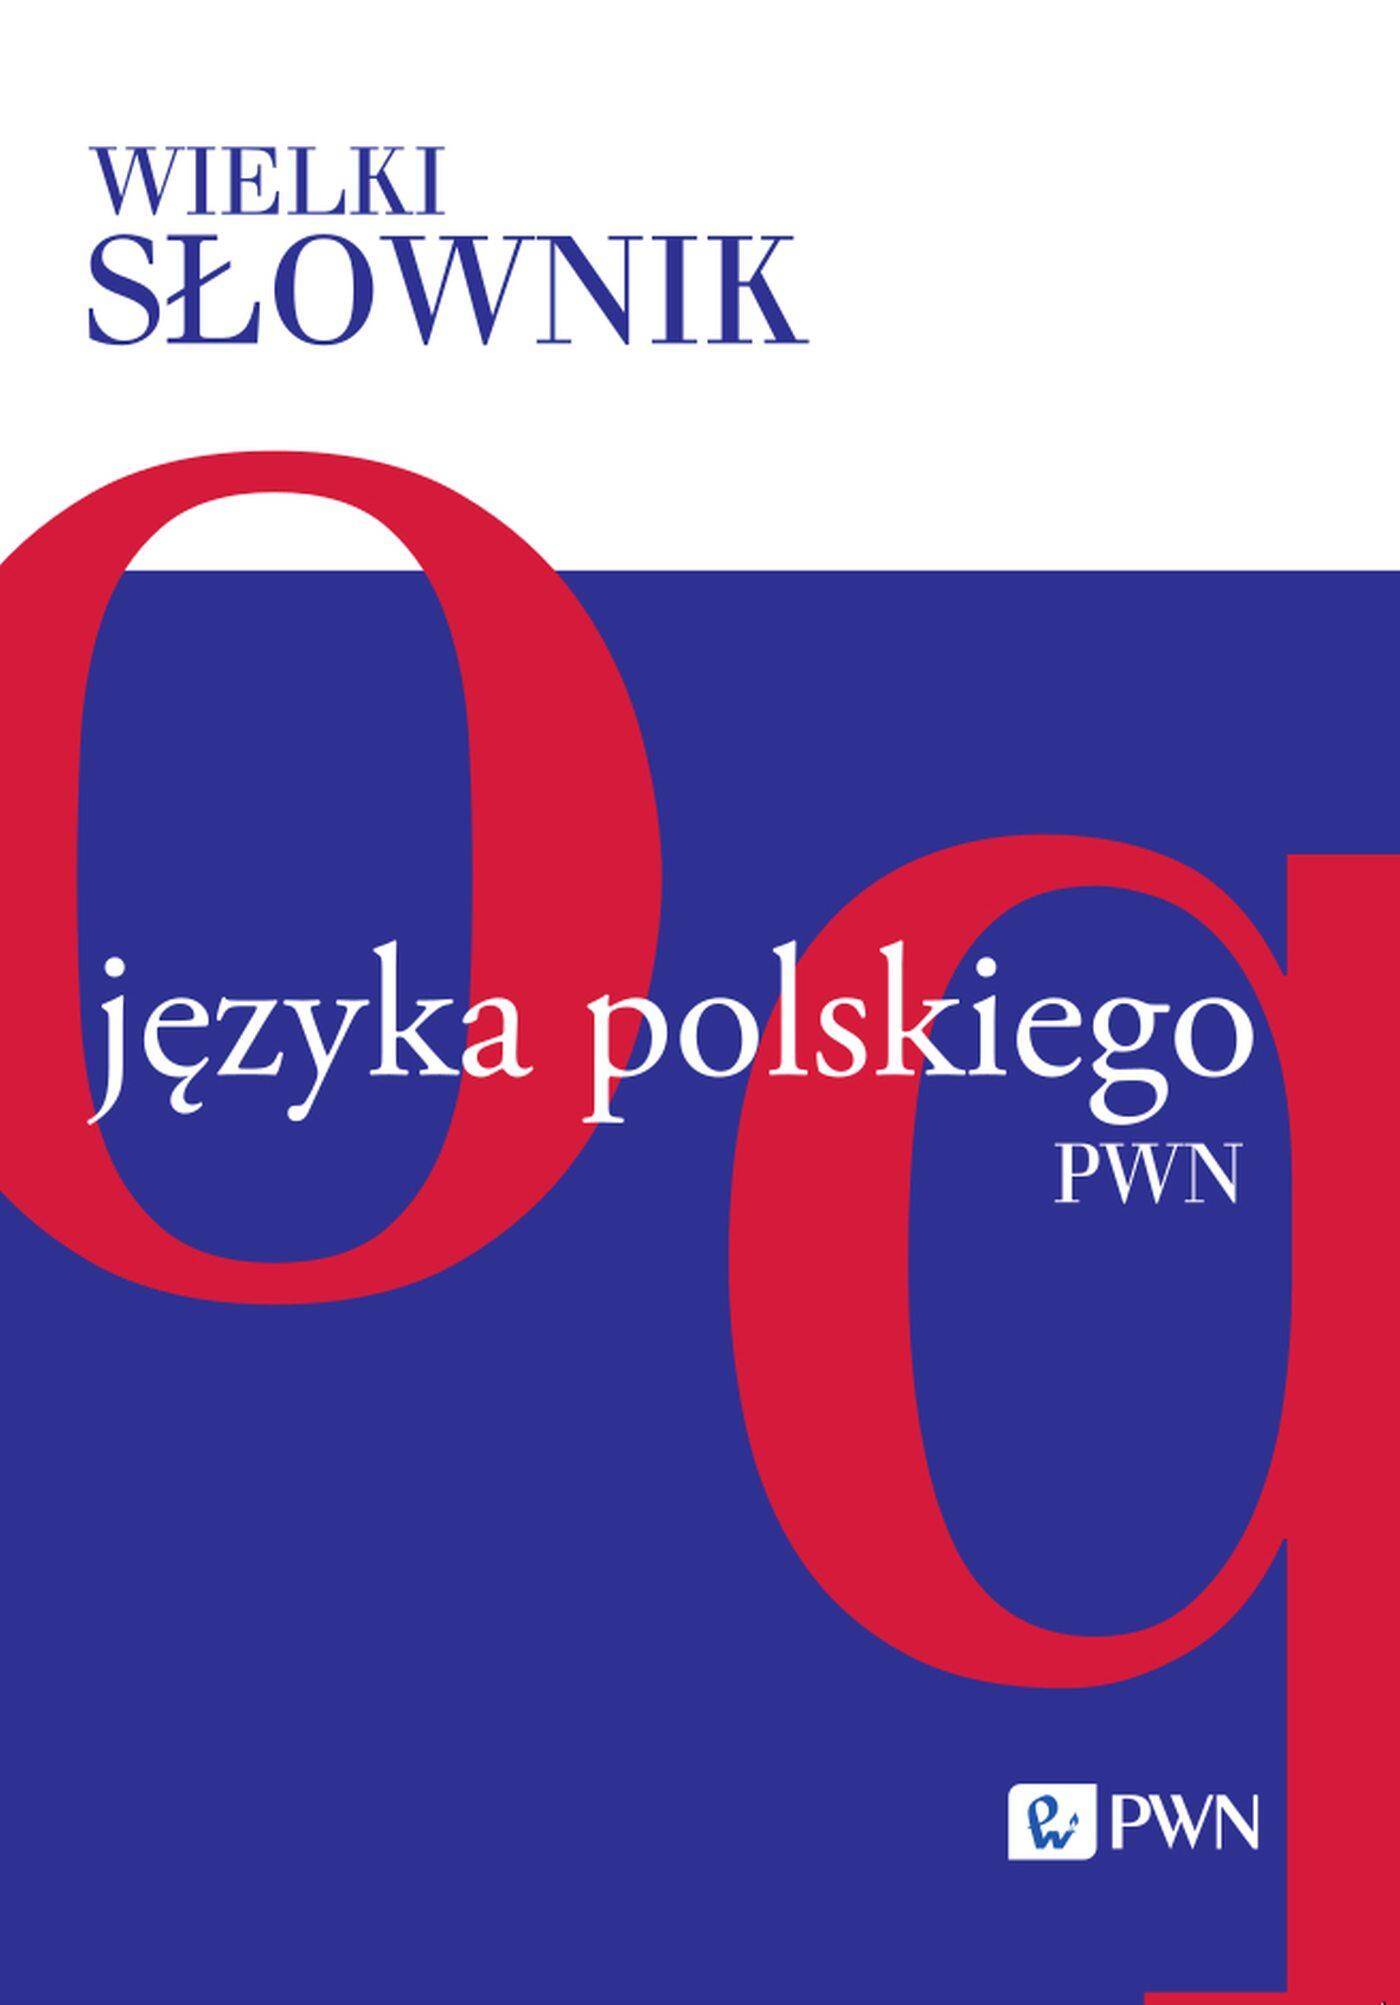 Wielki słownik języka polskiego PWN Tom III